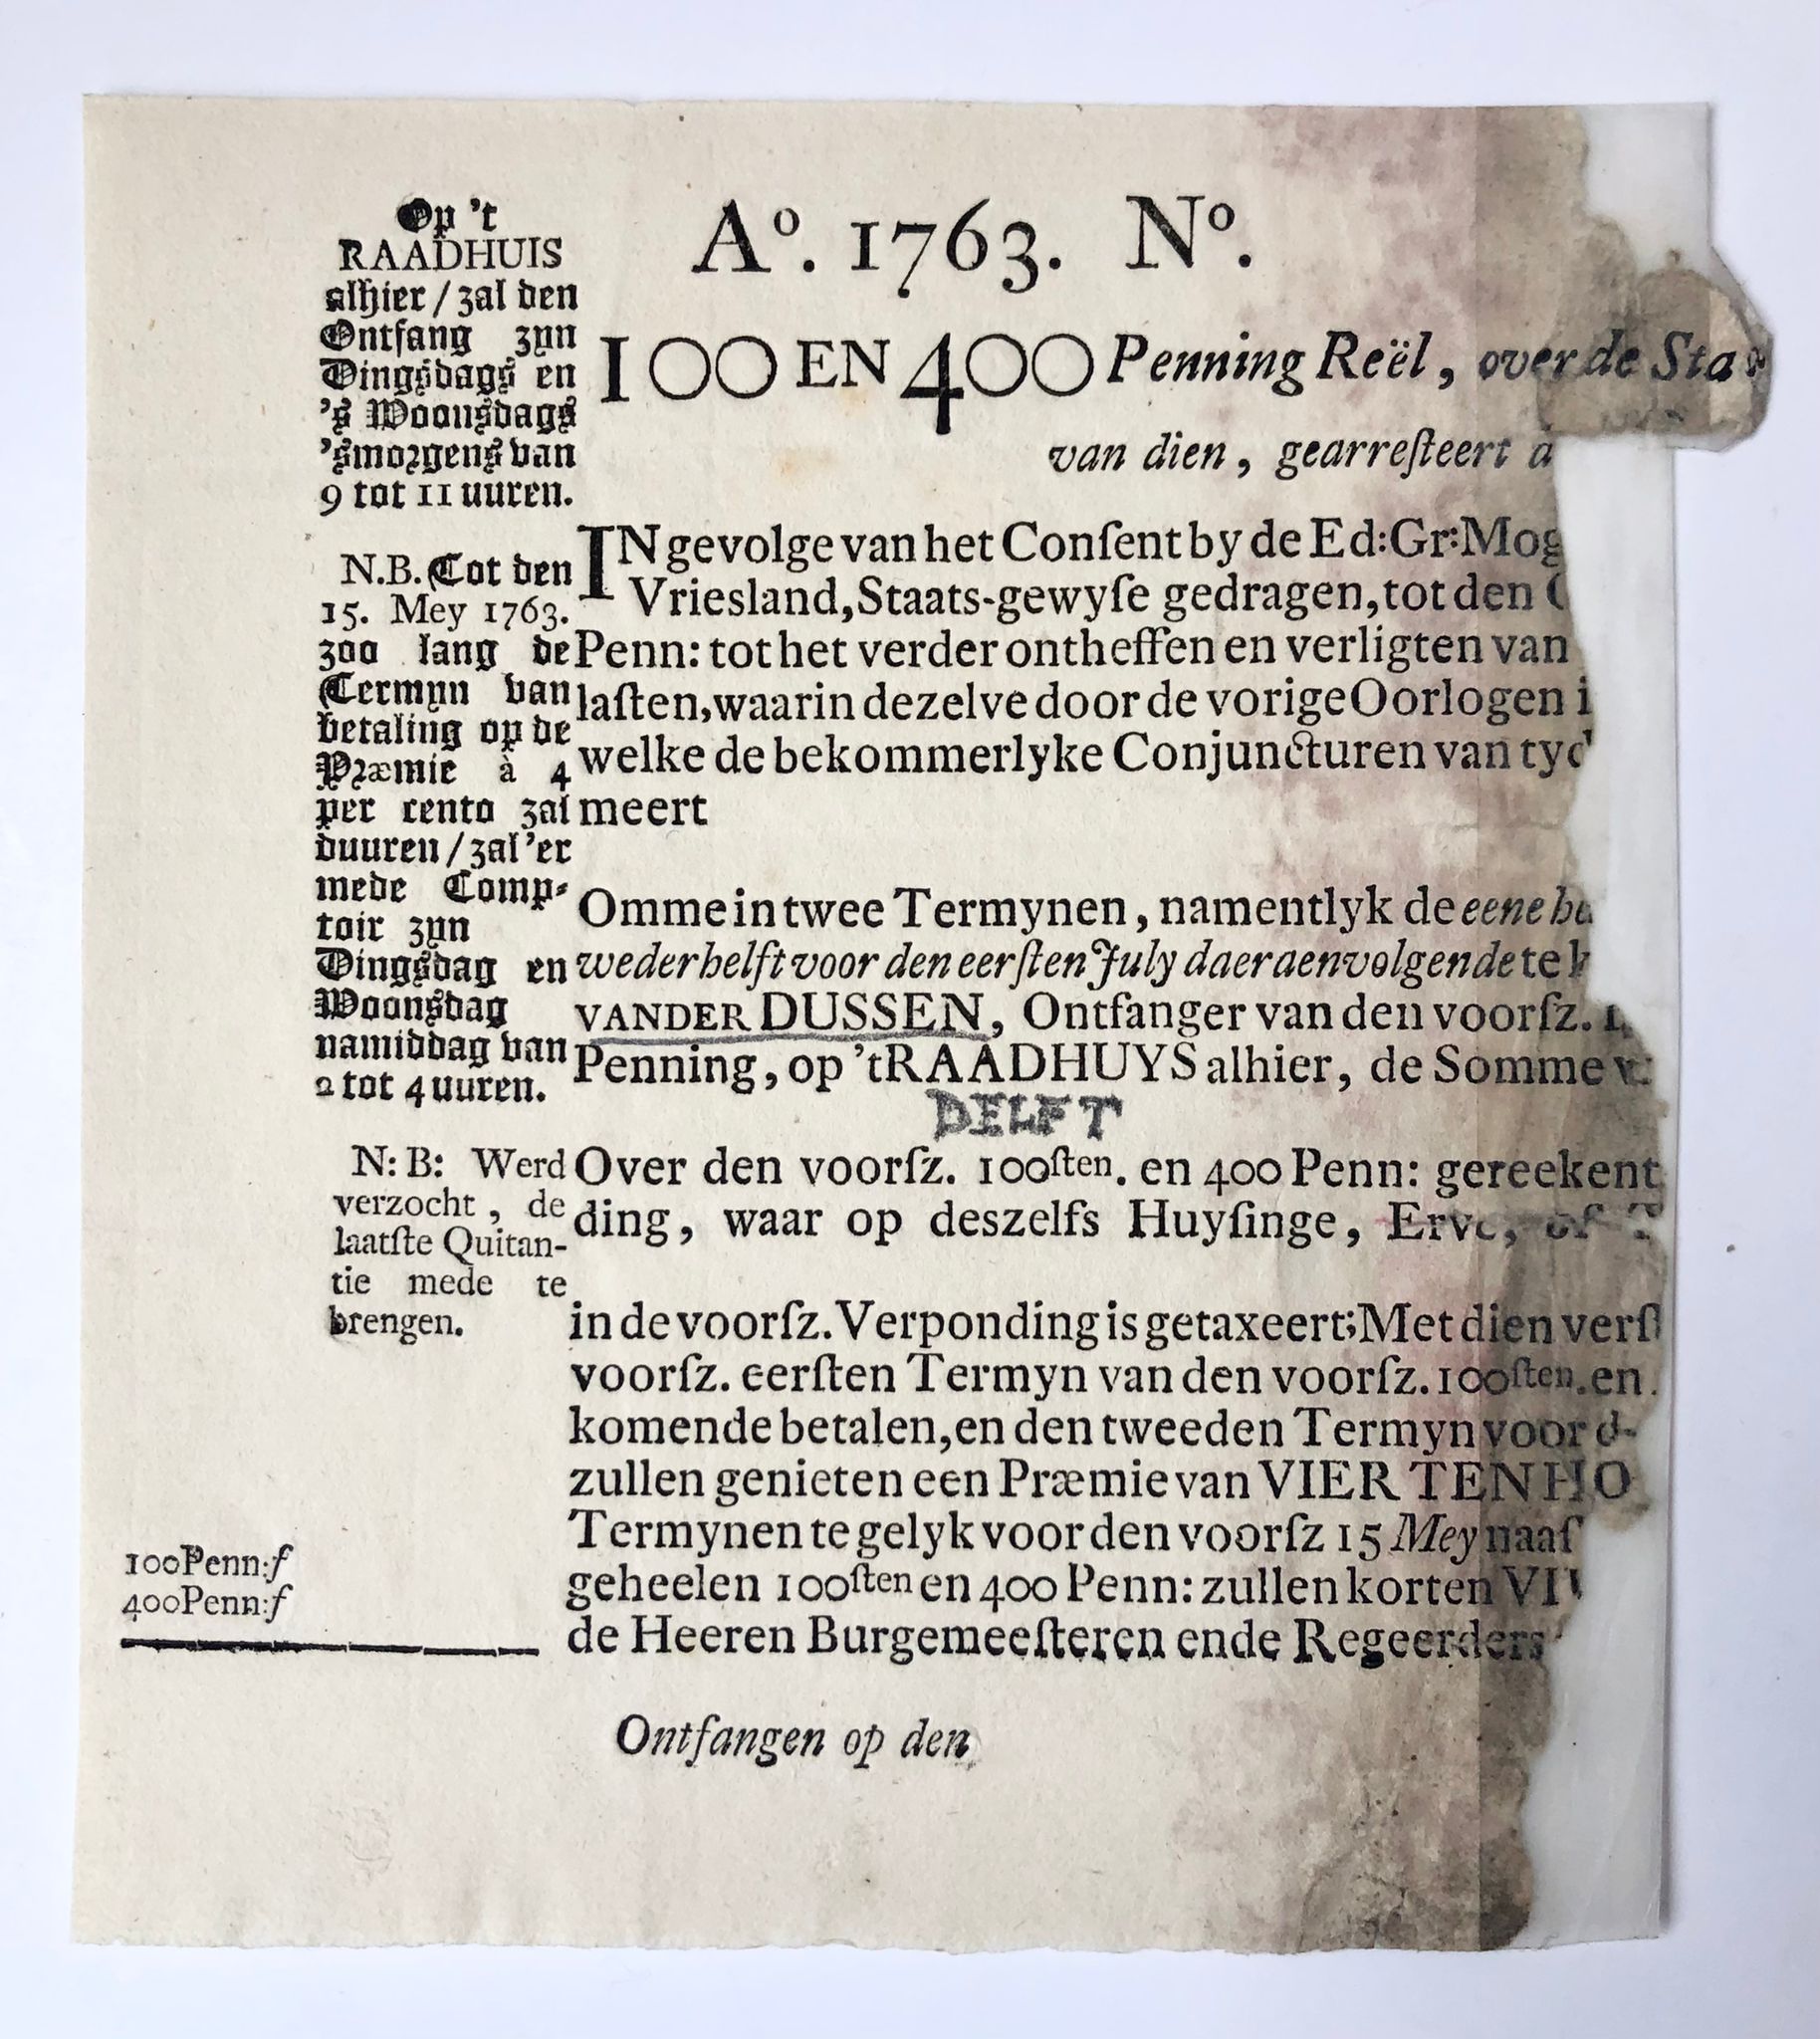 [Printed publication, tax, 1763] Tax form /Belastingbiljet voor 100e en 400e penning over 1763 in Delft. Payment must be made to ontvanger Van der Dussen. Not filled in. Damaged, 1 p.